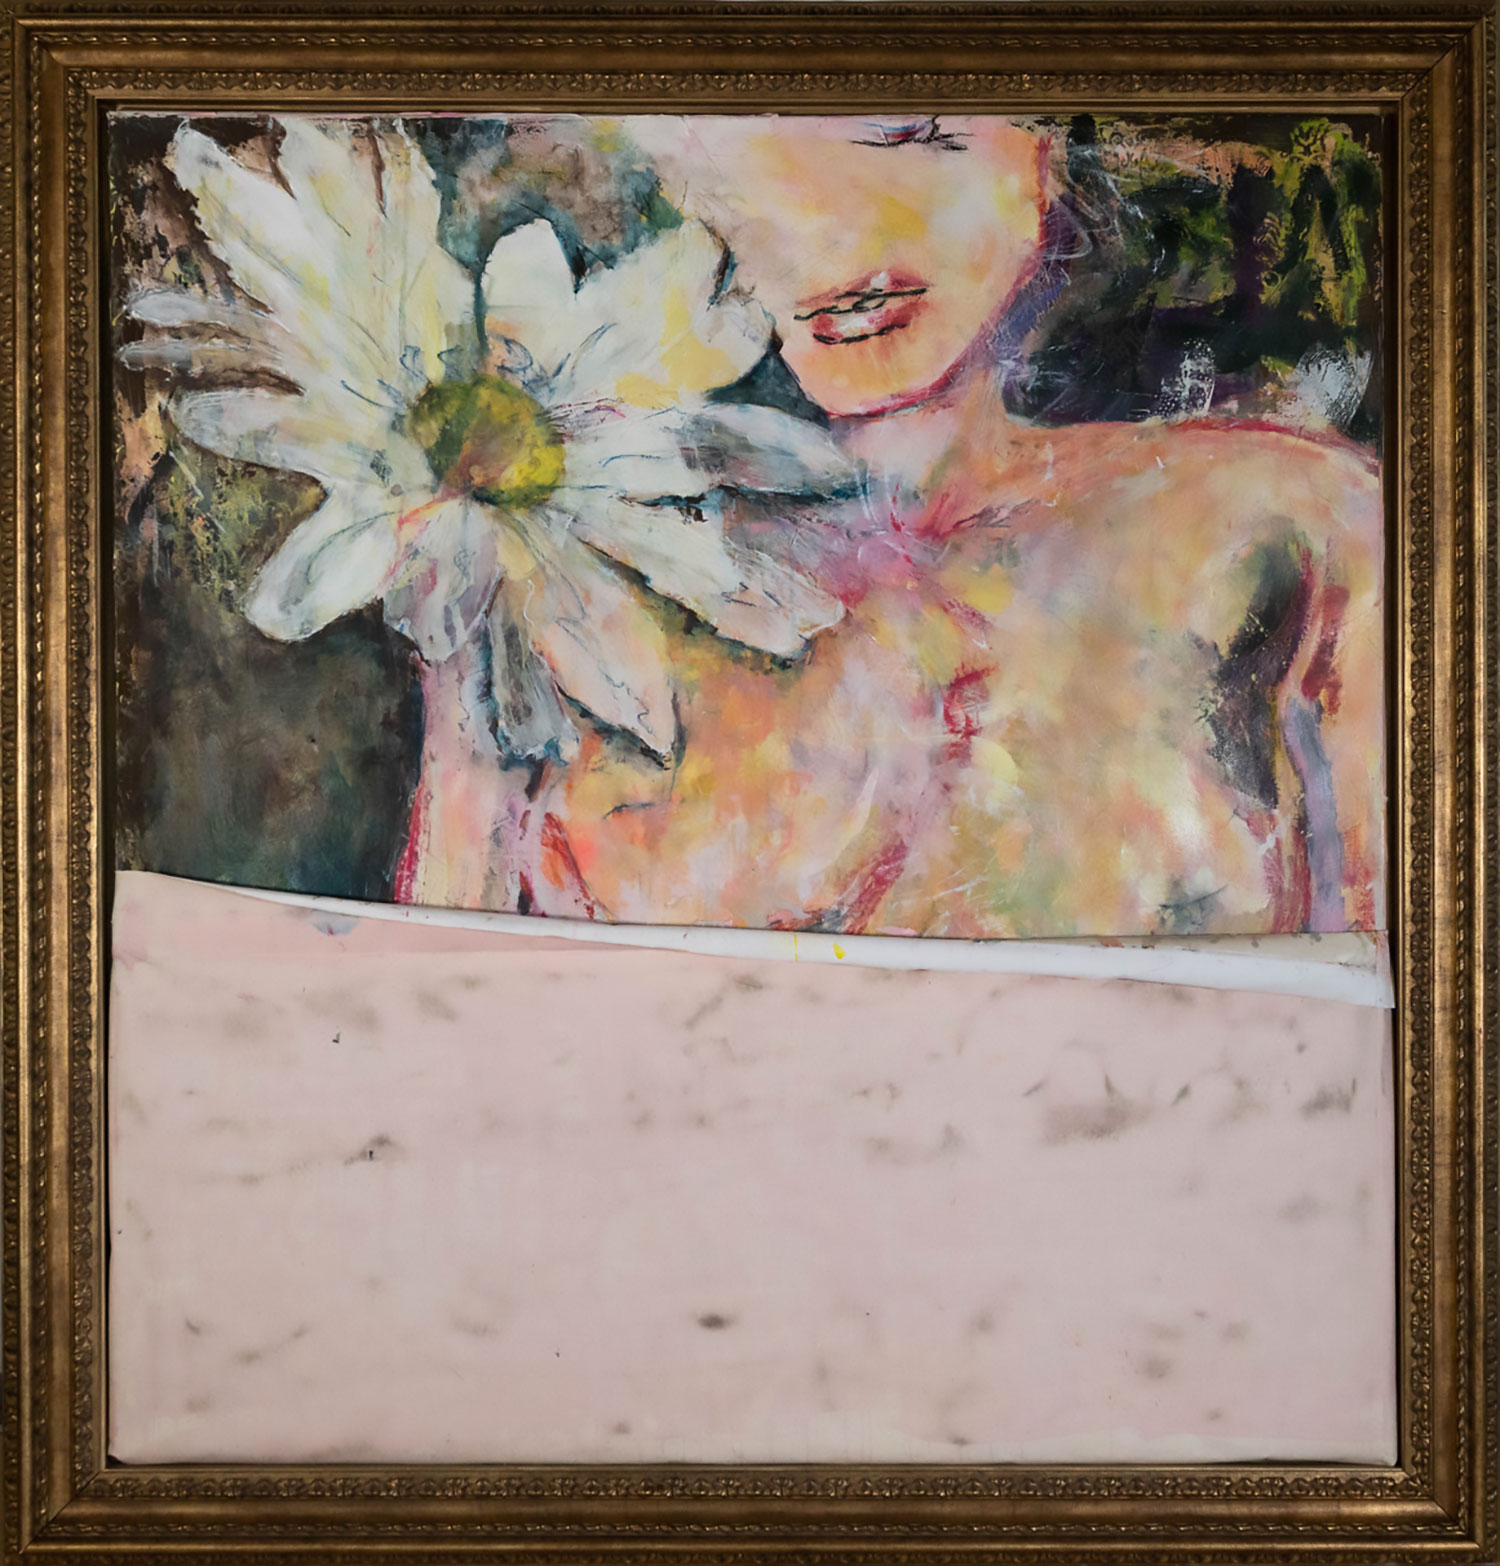 Claudia Seiler artist,DAISY`S SECRET ,146 cm x 140 cm, gerahmt / framed,Acryl, Wachs, Ölstift auf Leinwand
acrylics, wax, oilpen on canvas